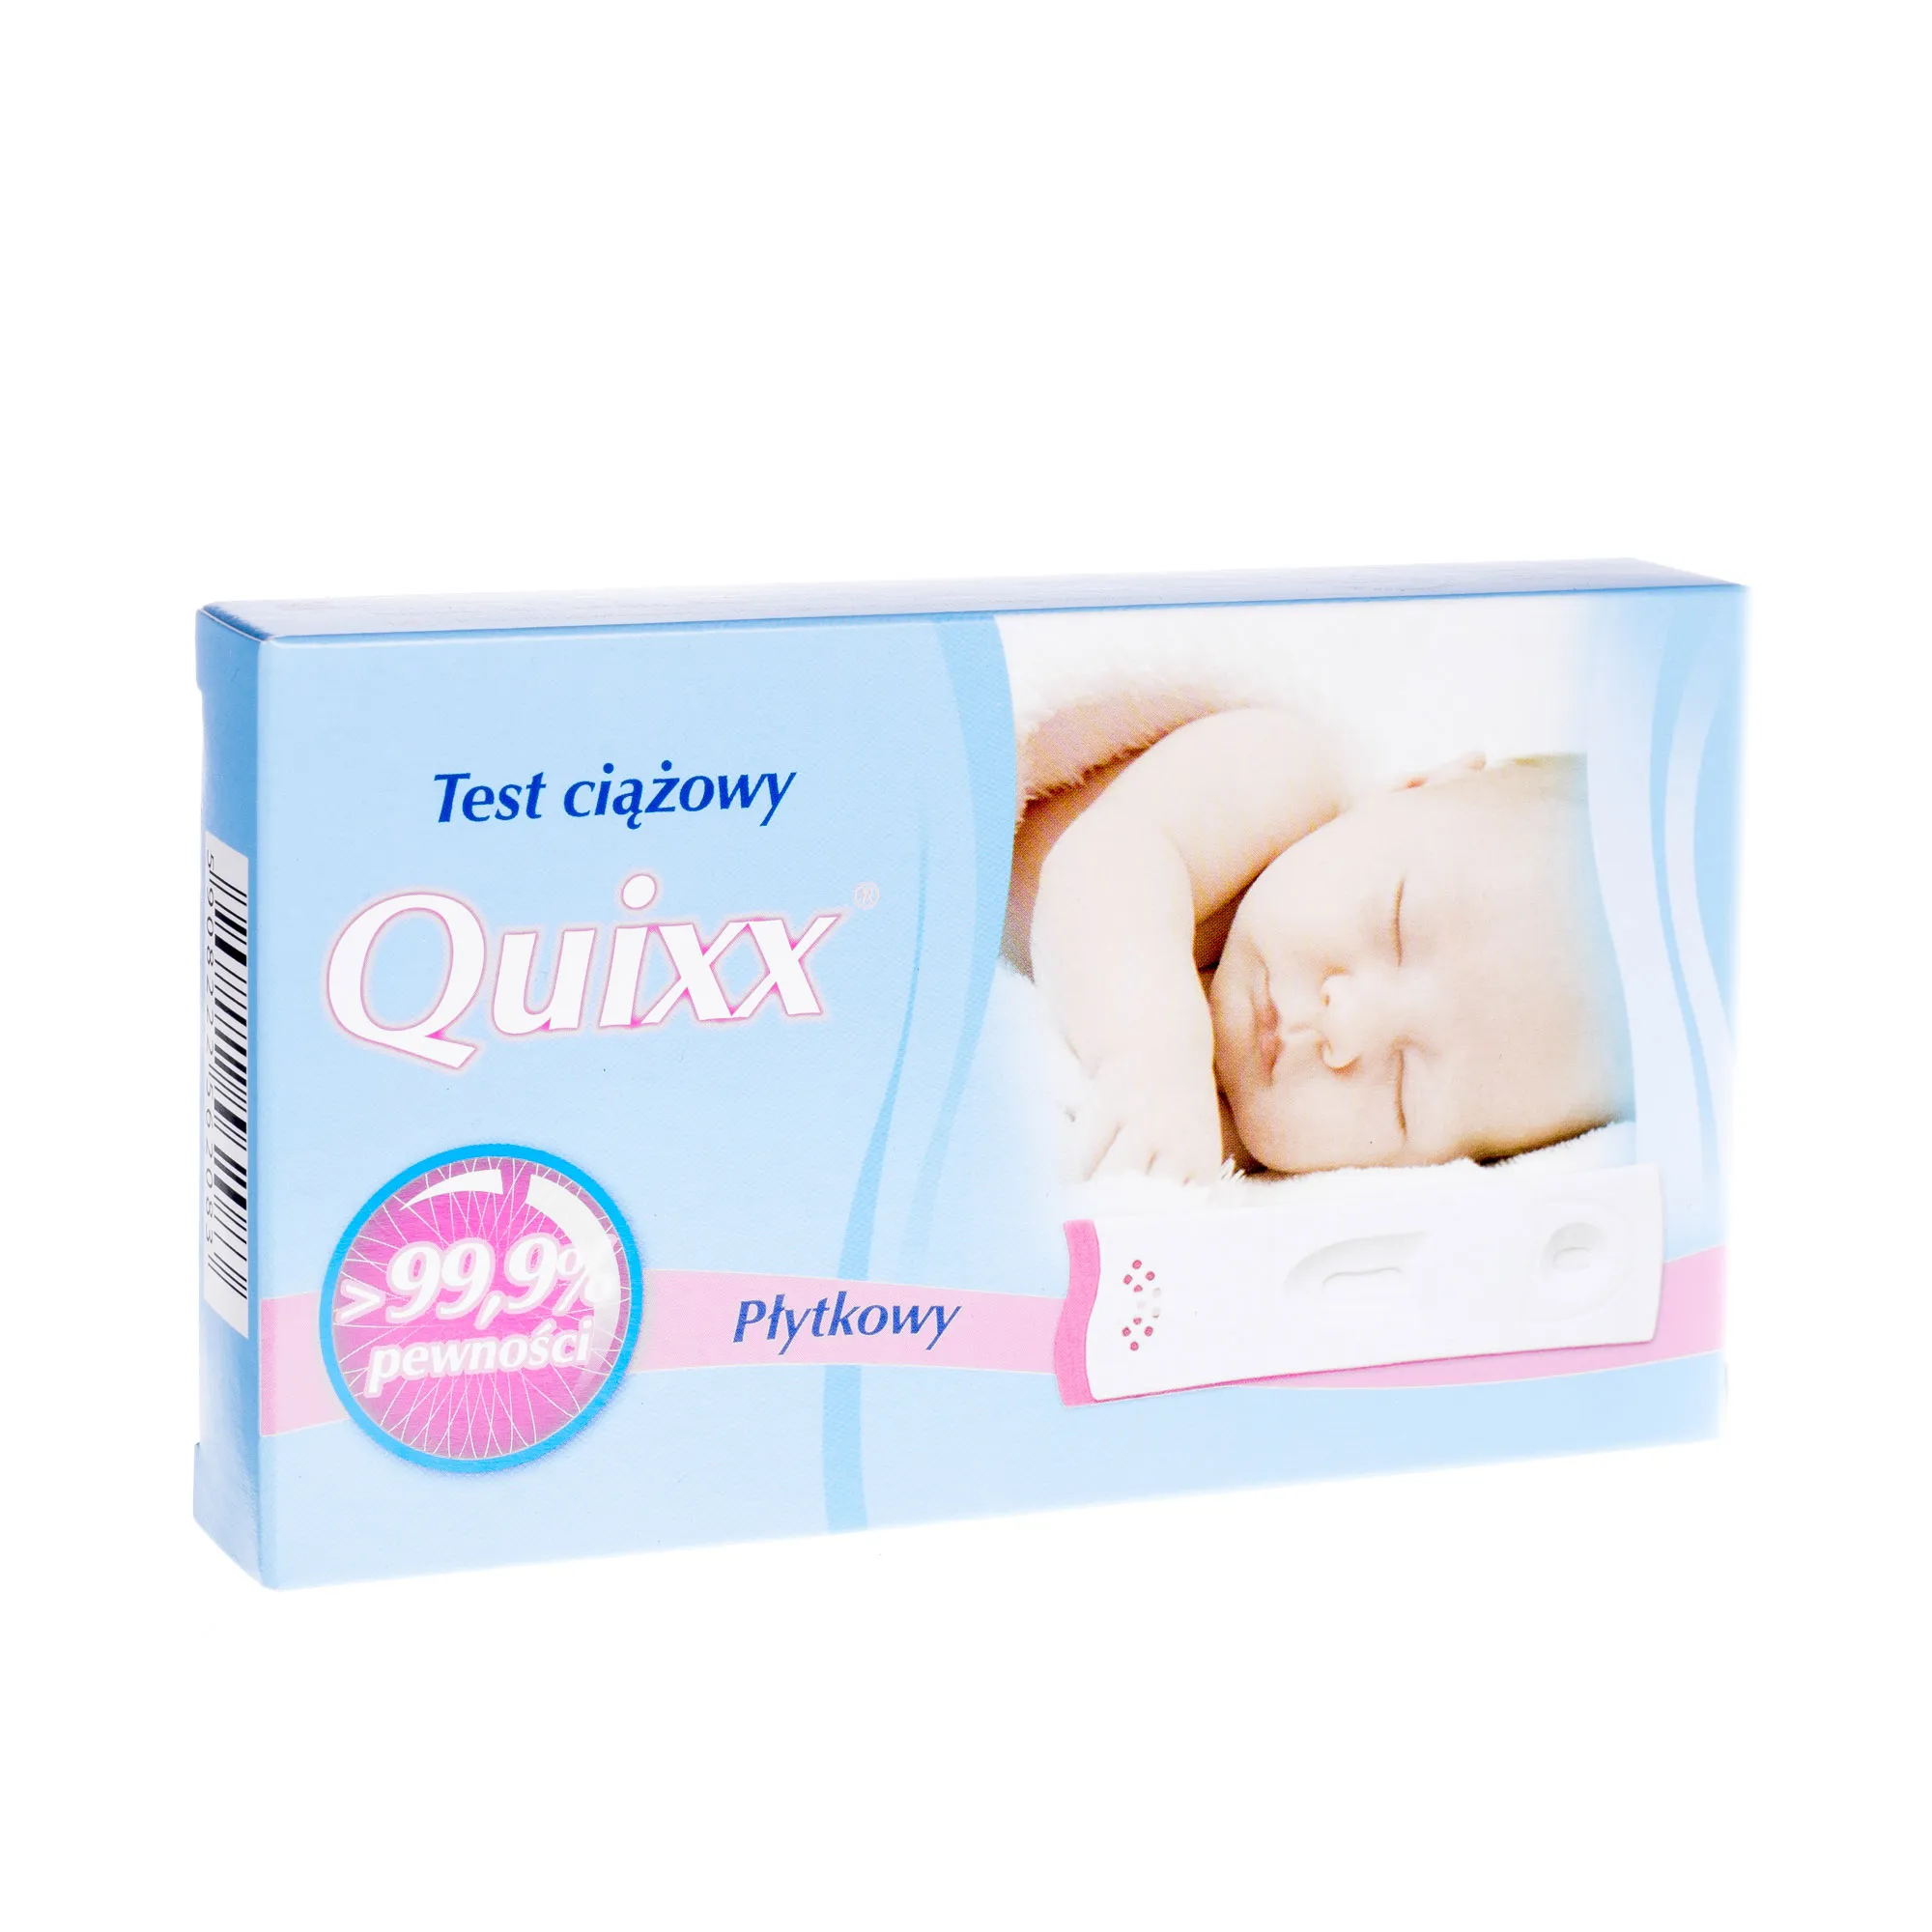 Quixx test ciążowy płytkowy, 1 szt.